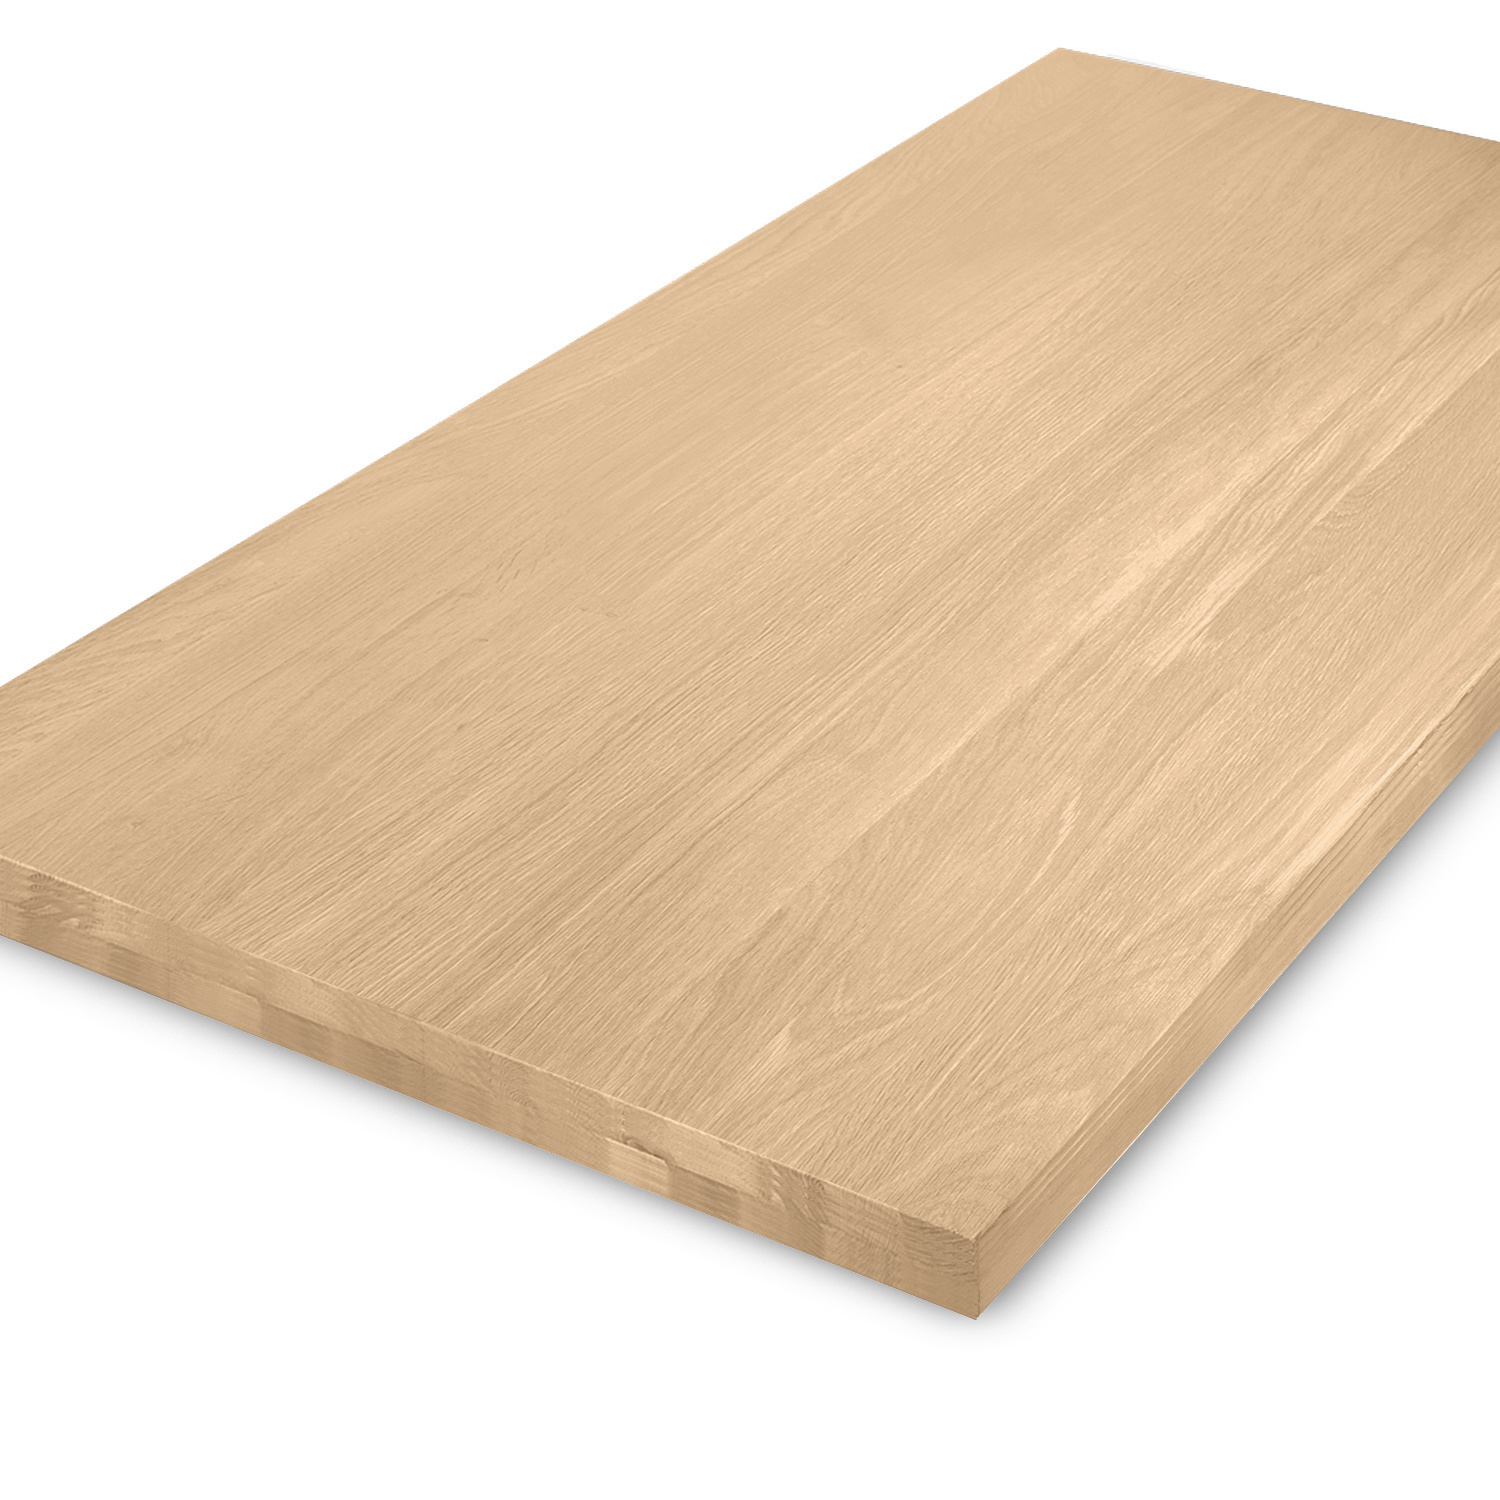  Tischplatte Eiche nach Maß - Aufgedoppelt - 5 cm dick (2-lagig) - Eichenholz A-Qualität - Eiche Tischplatte massiv - verleimt & künstlich getrocknet (HF 8-12%) - 50-120x50-300 cm